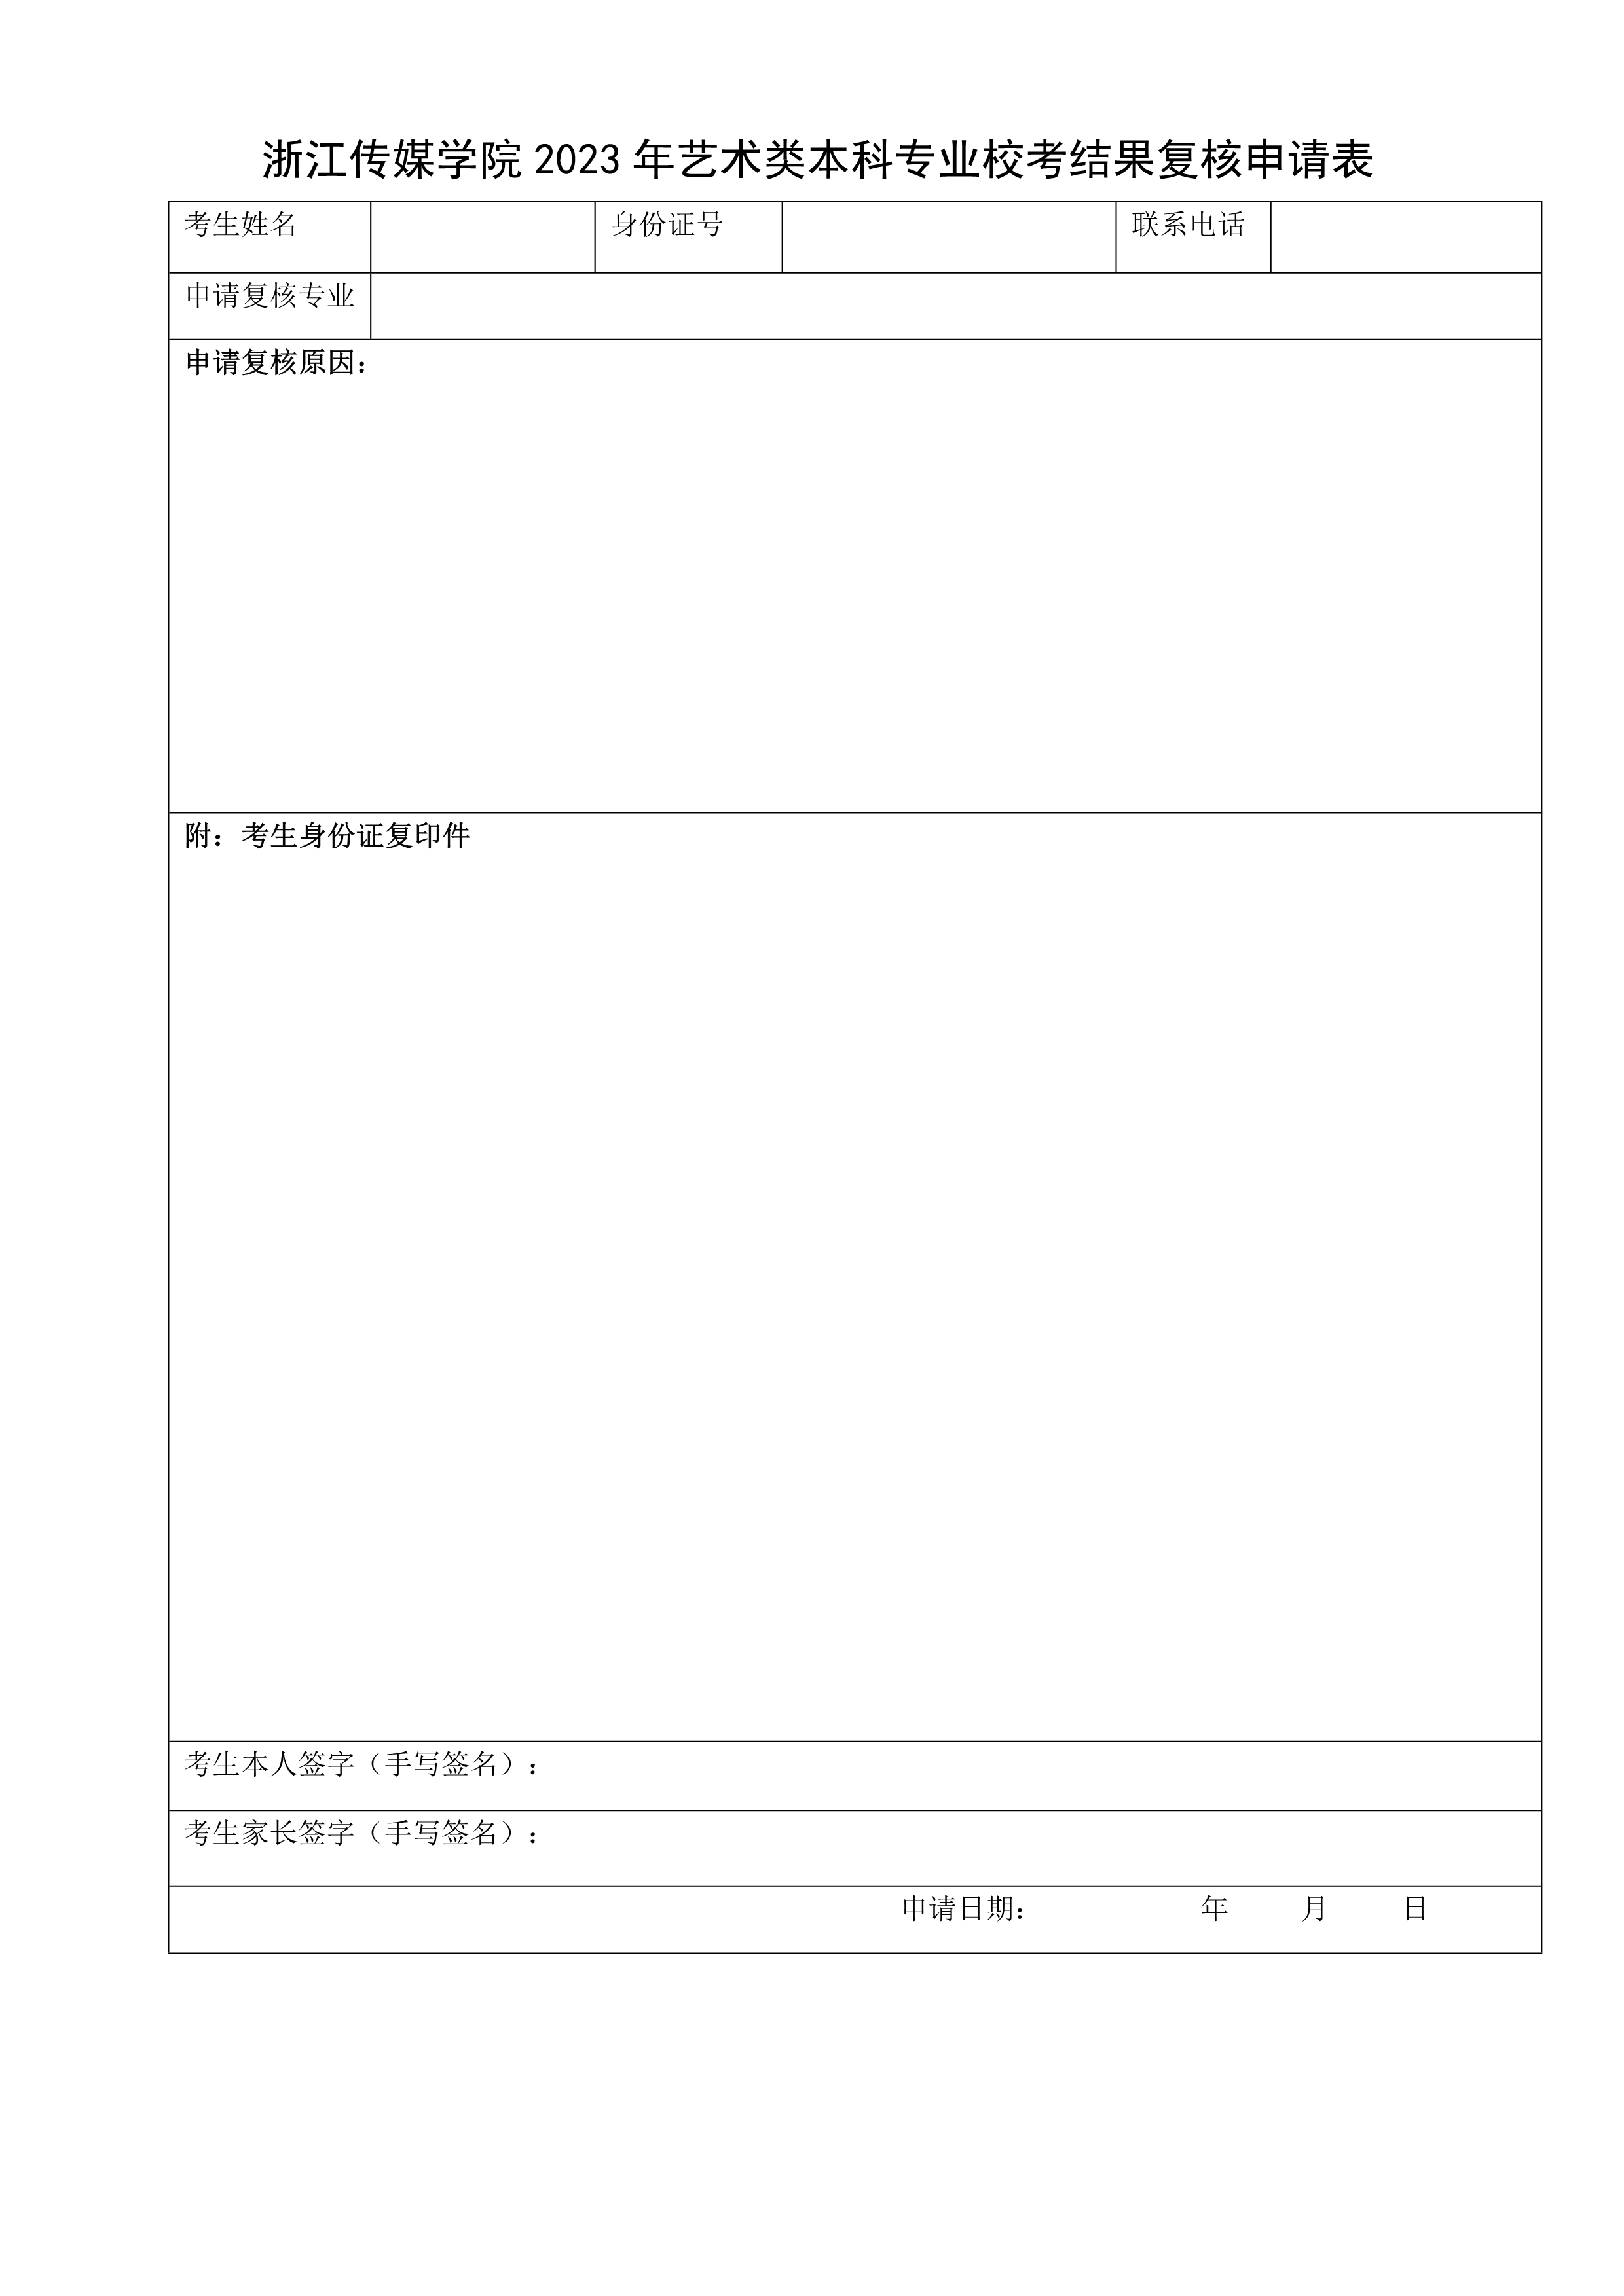 附件1：浙江传媒学院2023年艺术类本科专业校考结果复核申请表_1.jpg